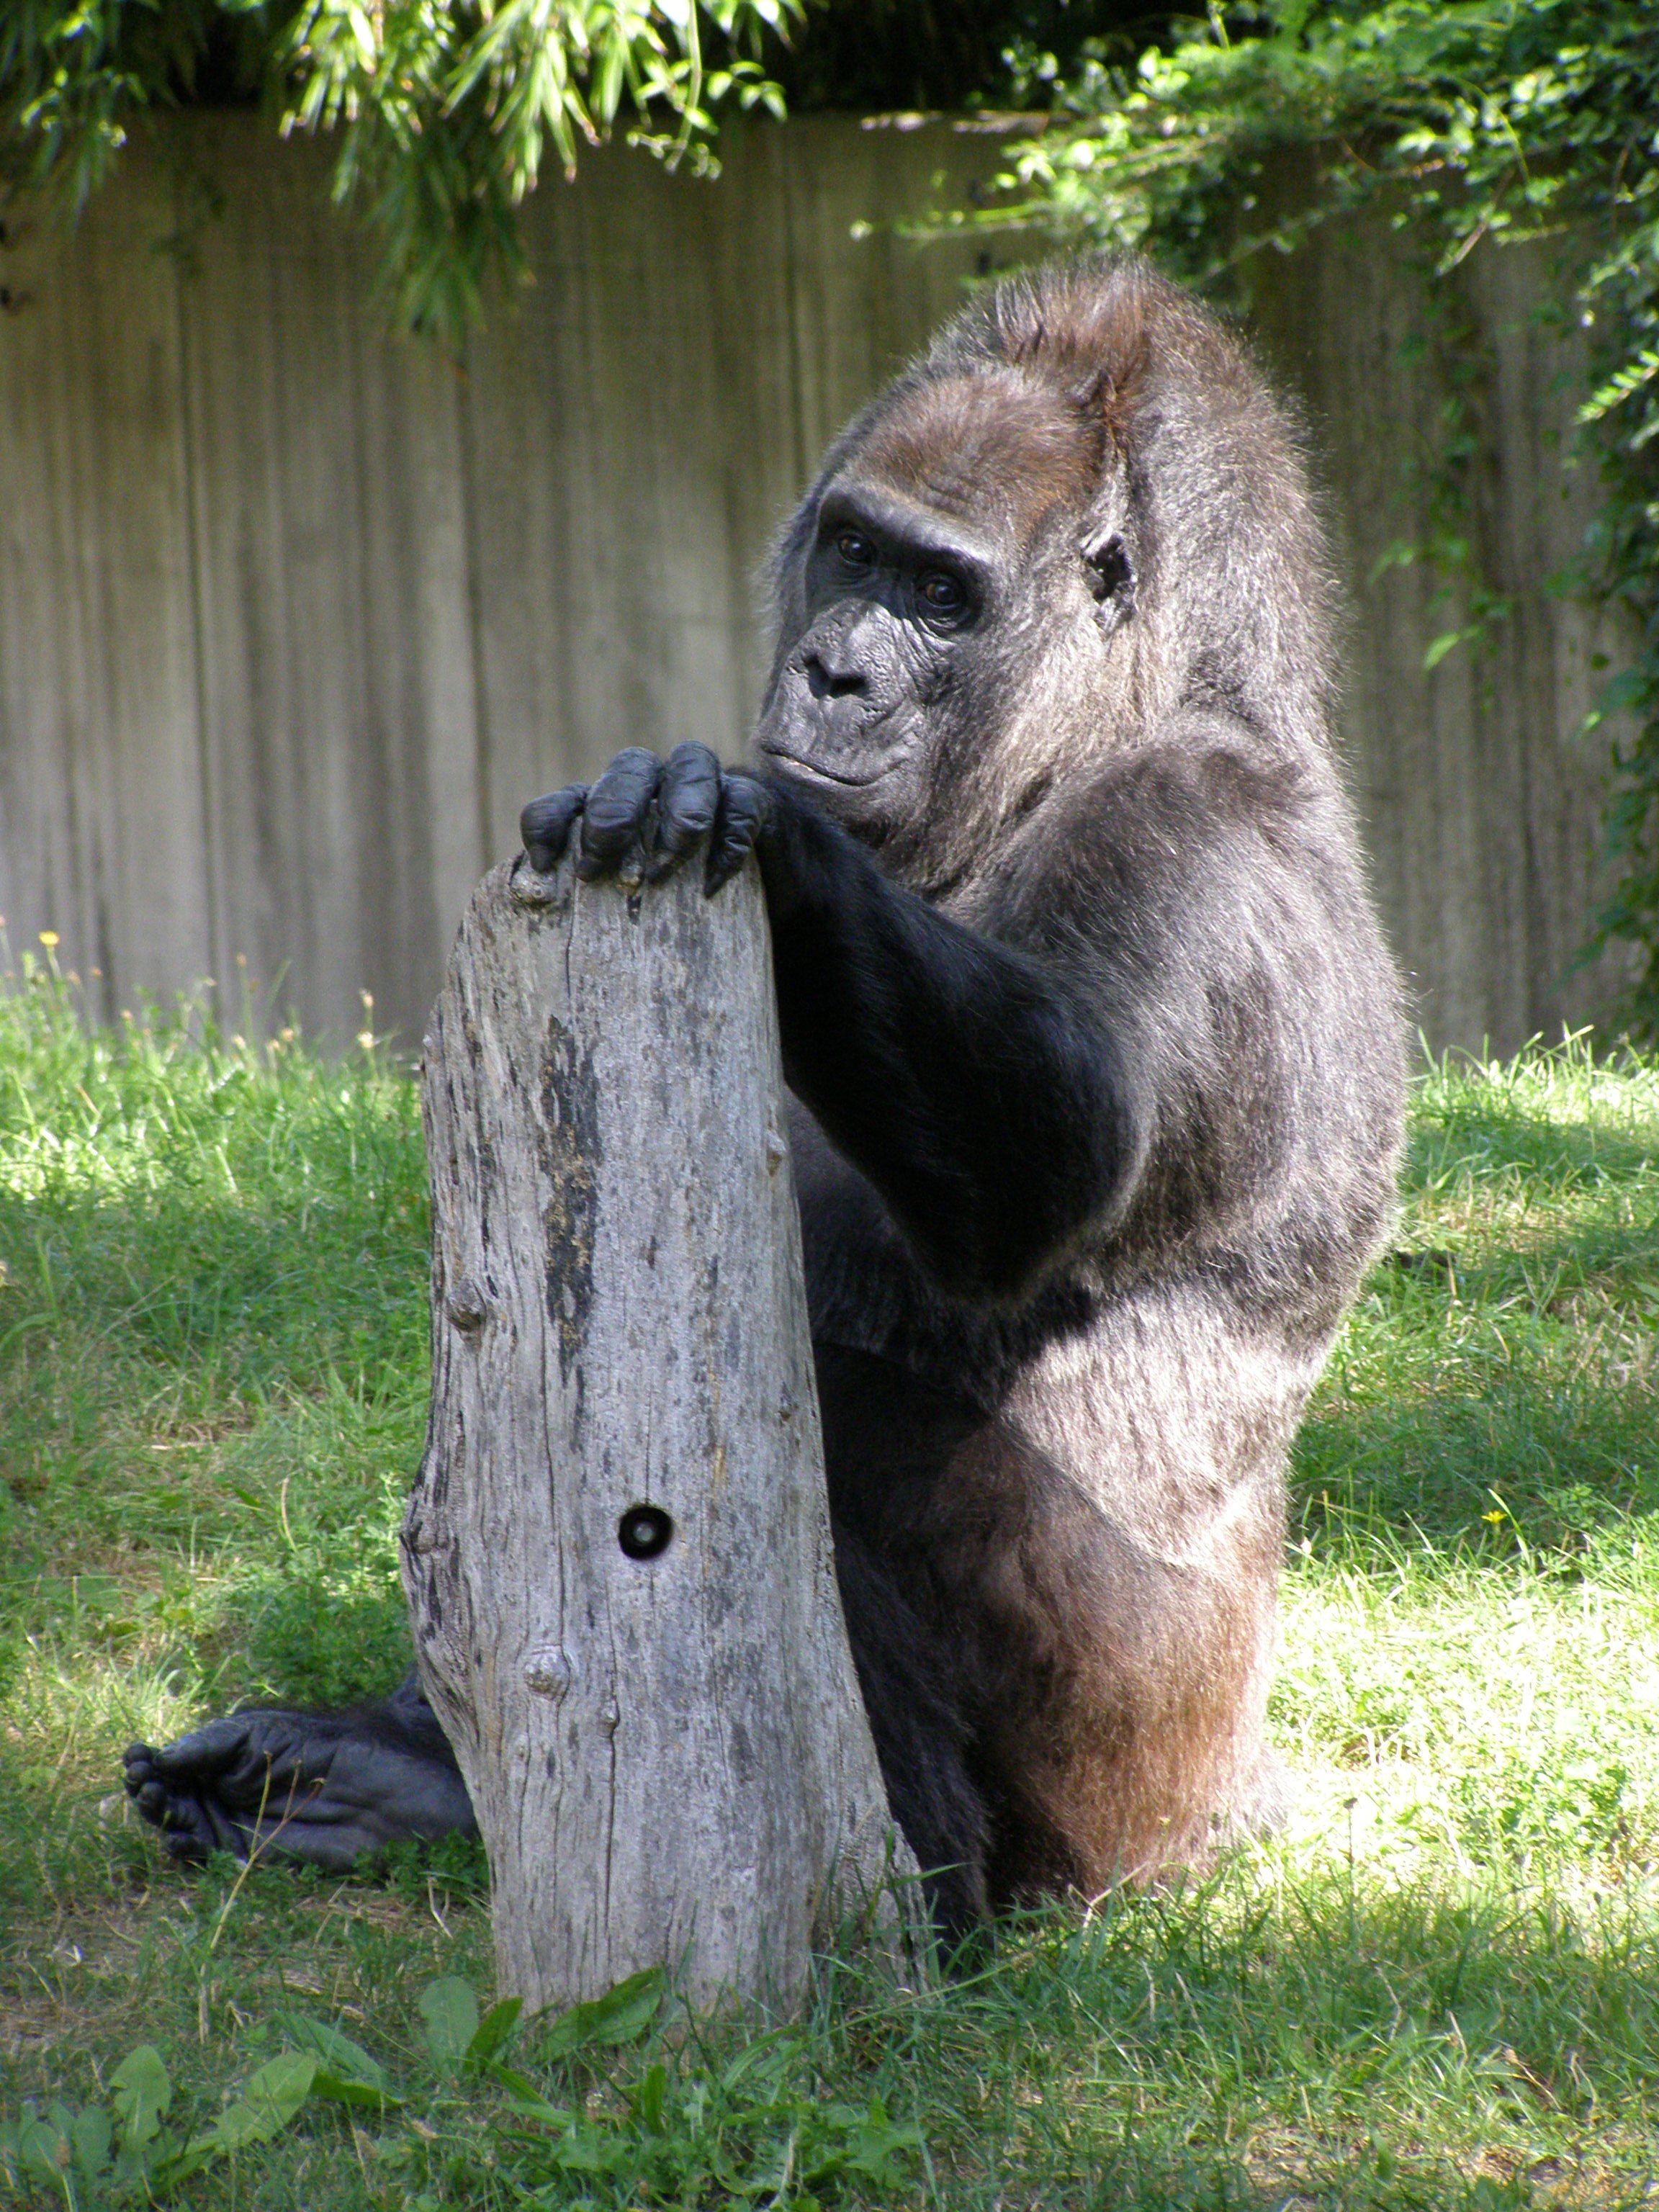 Farbphoto von einem Gorilla im Berliner Zoologischen Garten im Jahre 2008. Photographin: Luise Müller.